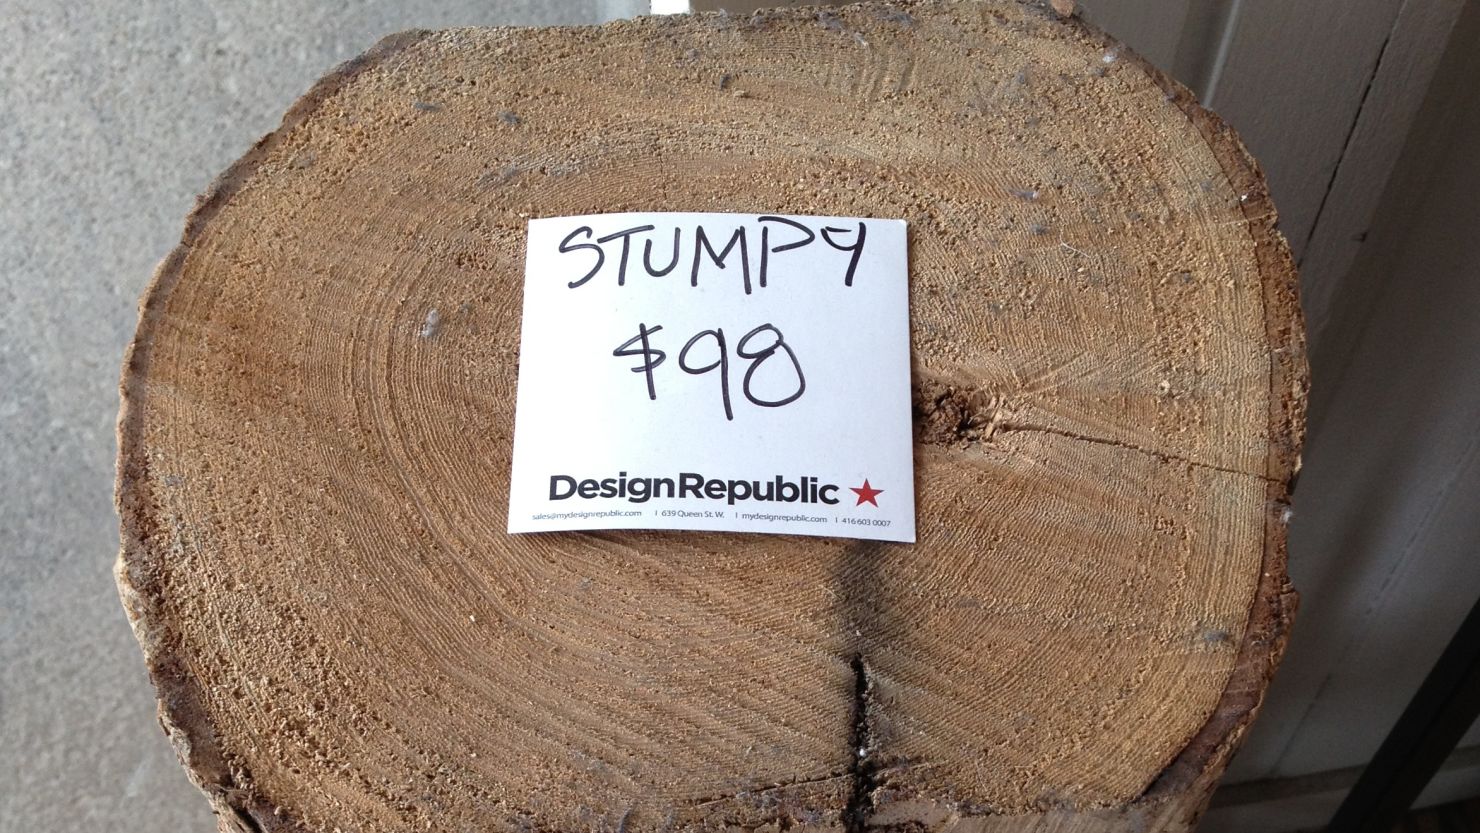 Log: It's big. It's heavy. It's wood. It costs $98.